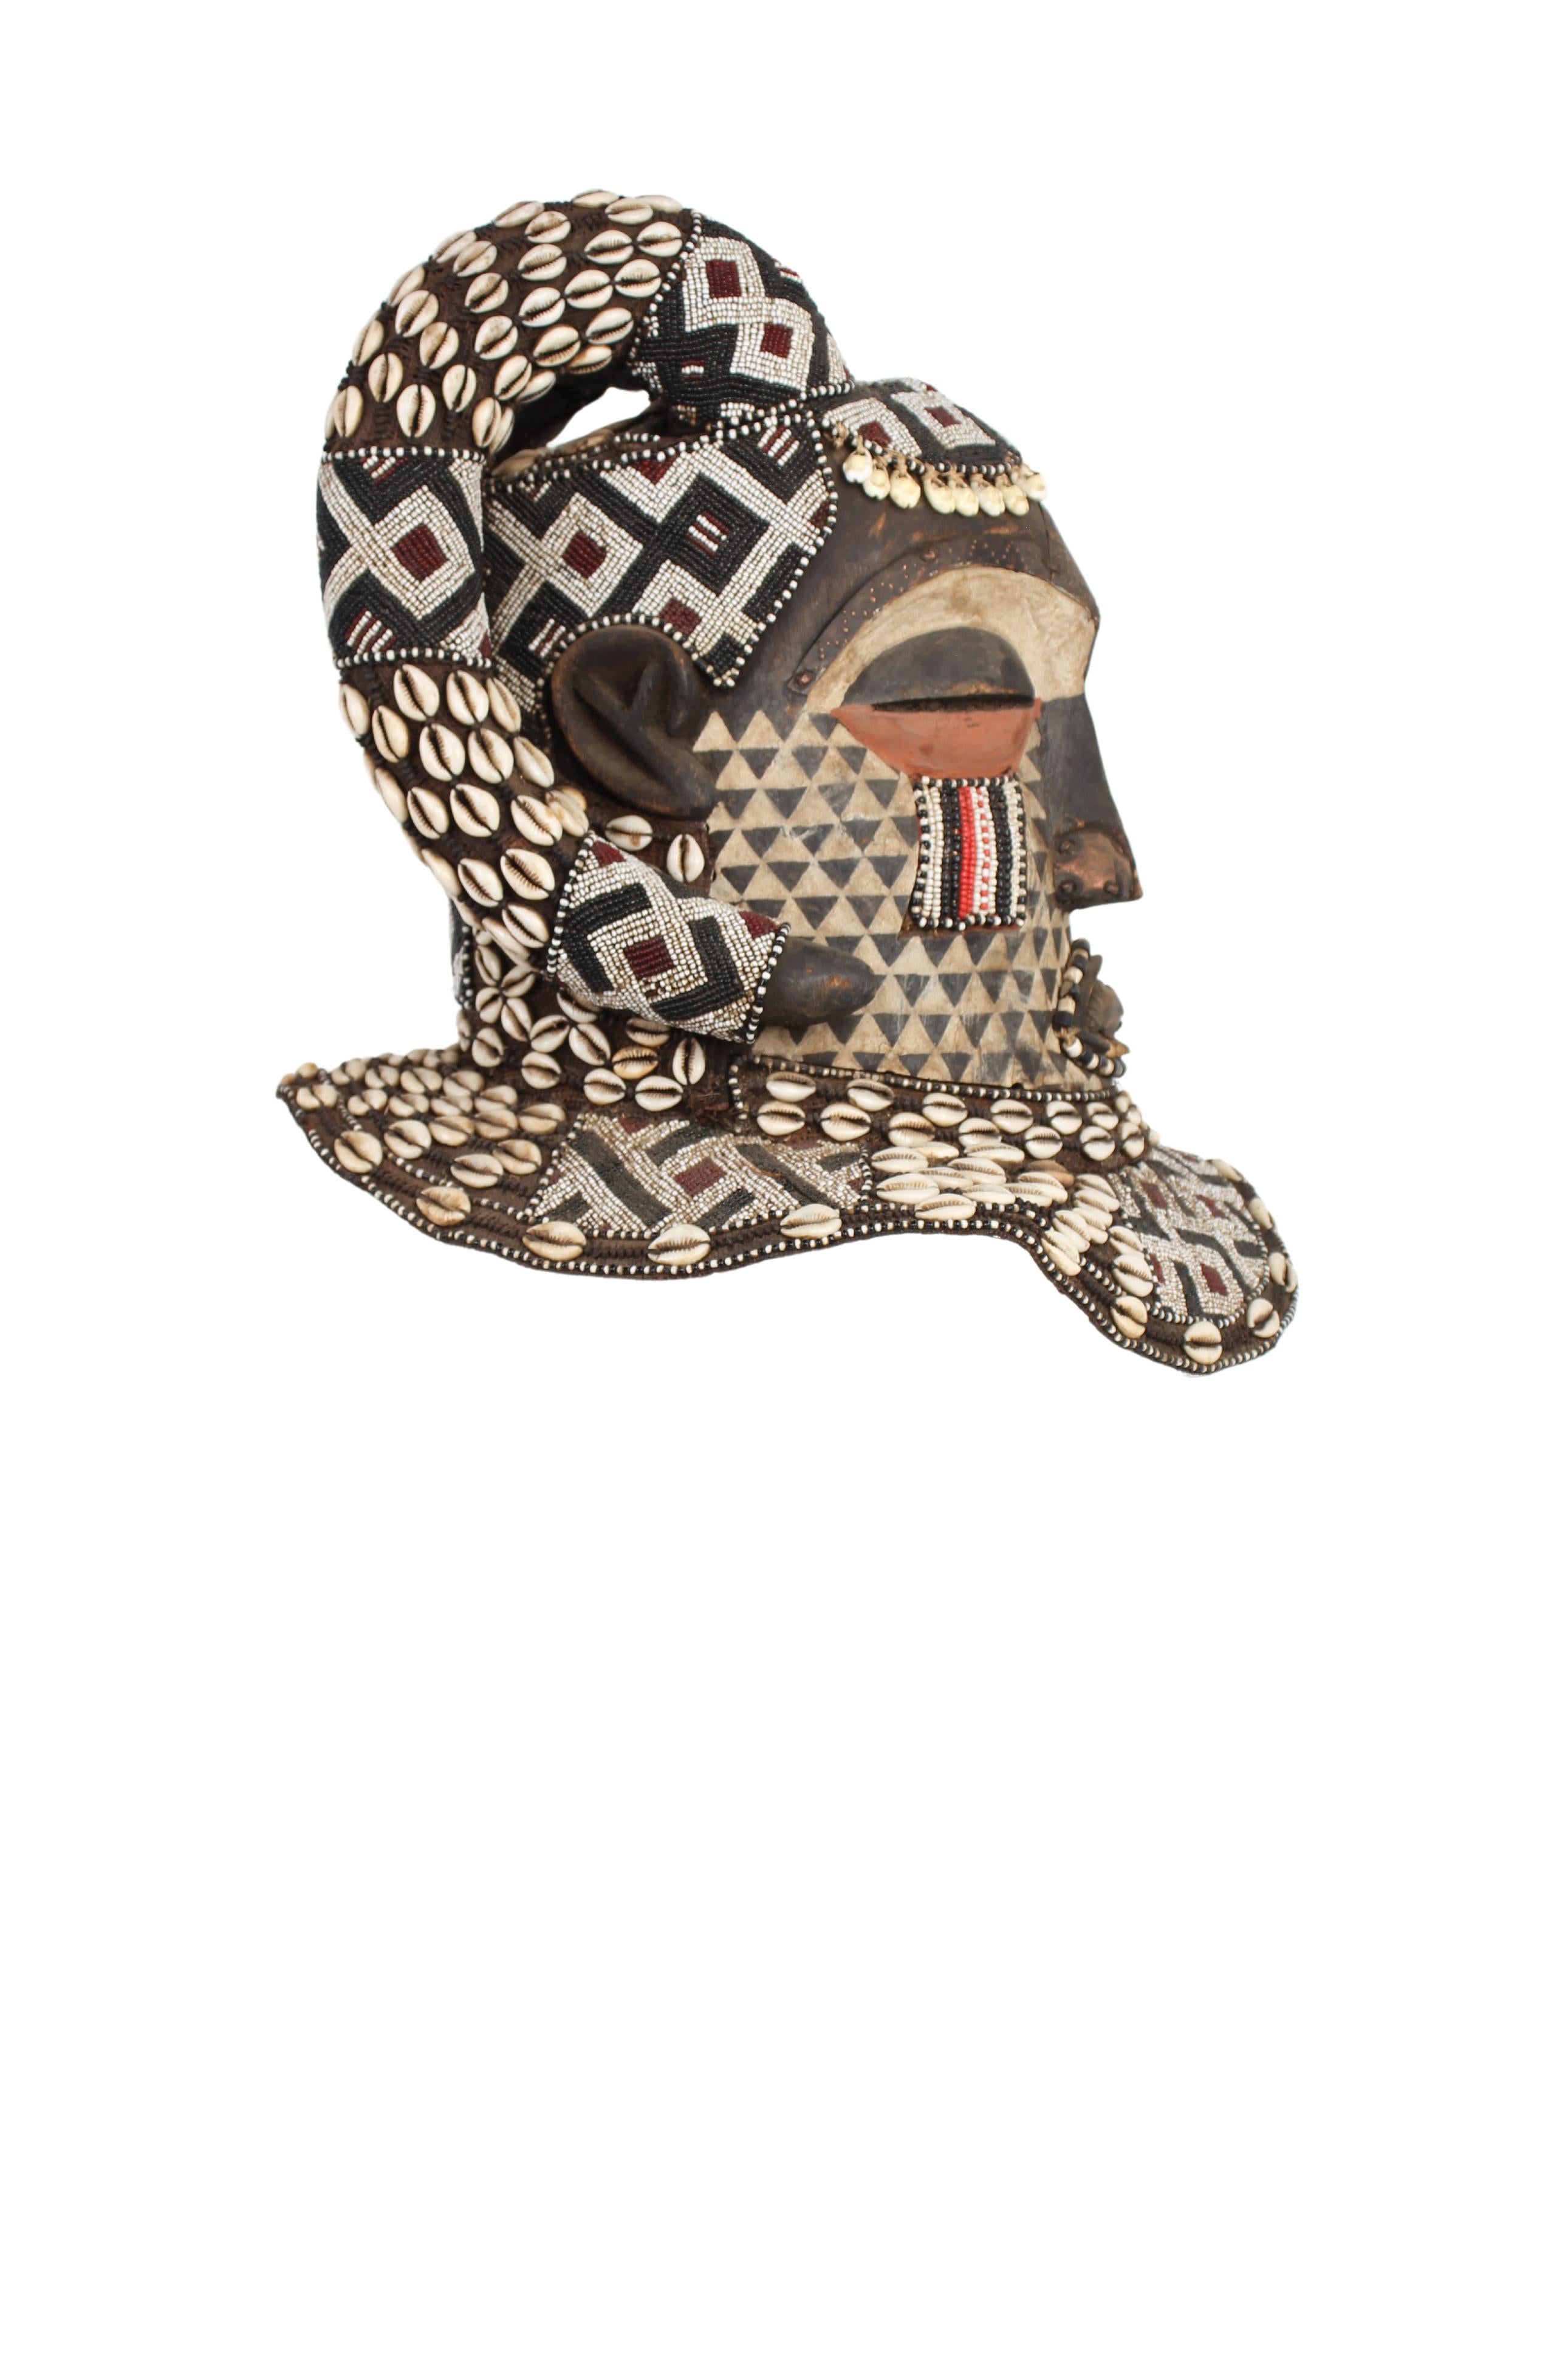 Kuba/Bakuba Tribe Mask ~27.6" Tall (New 2024) - West African Artifacts